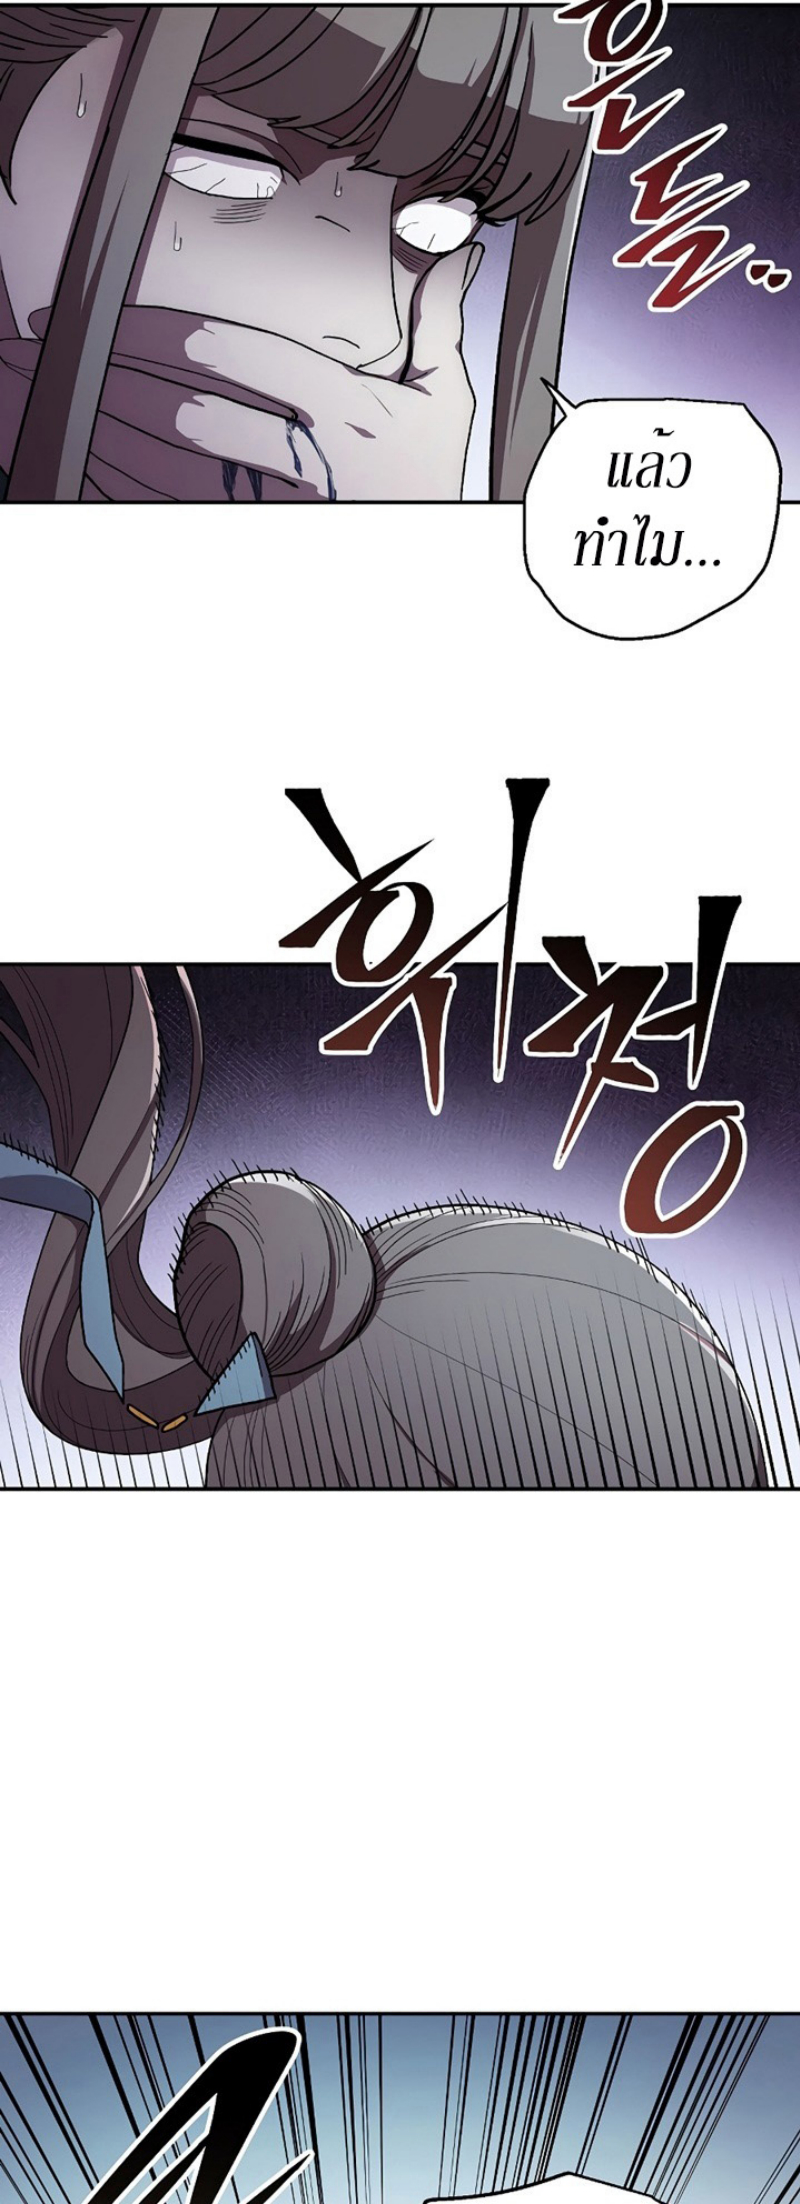 Legend of Asura – The Venom Dragon 42 (3)